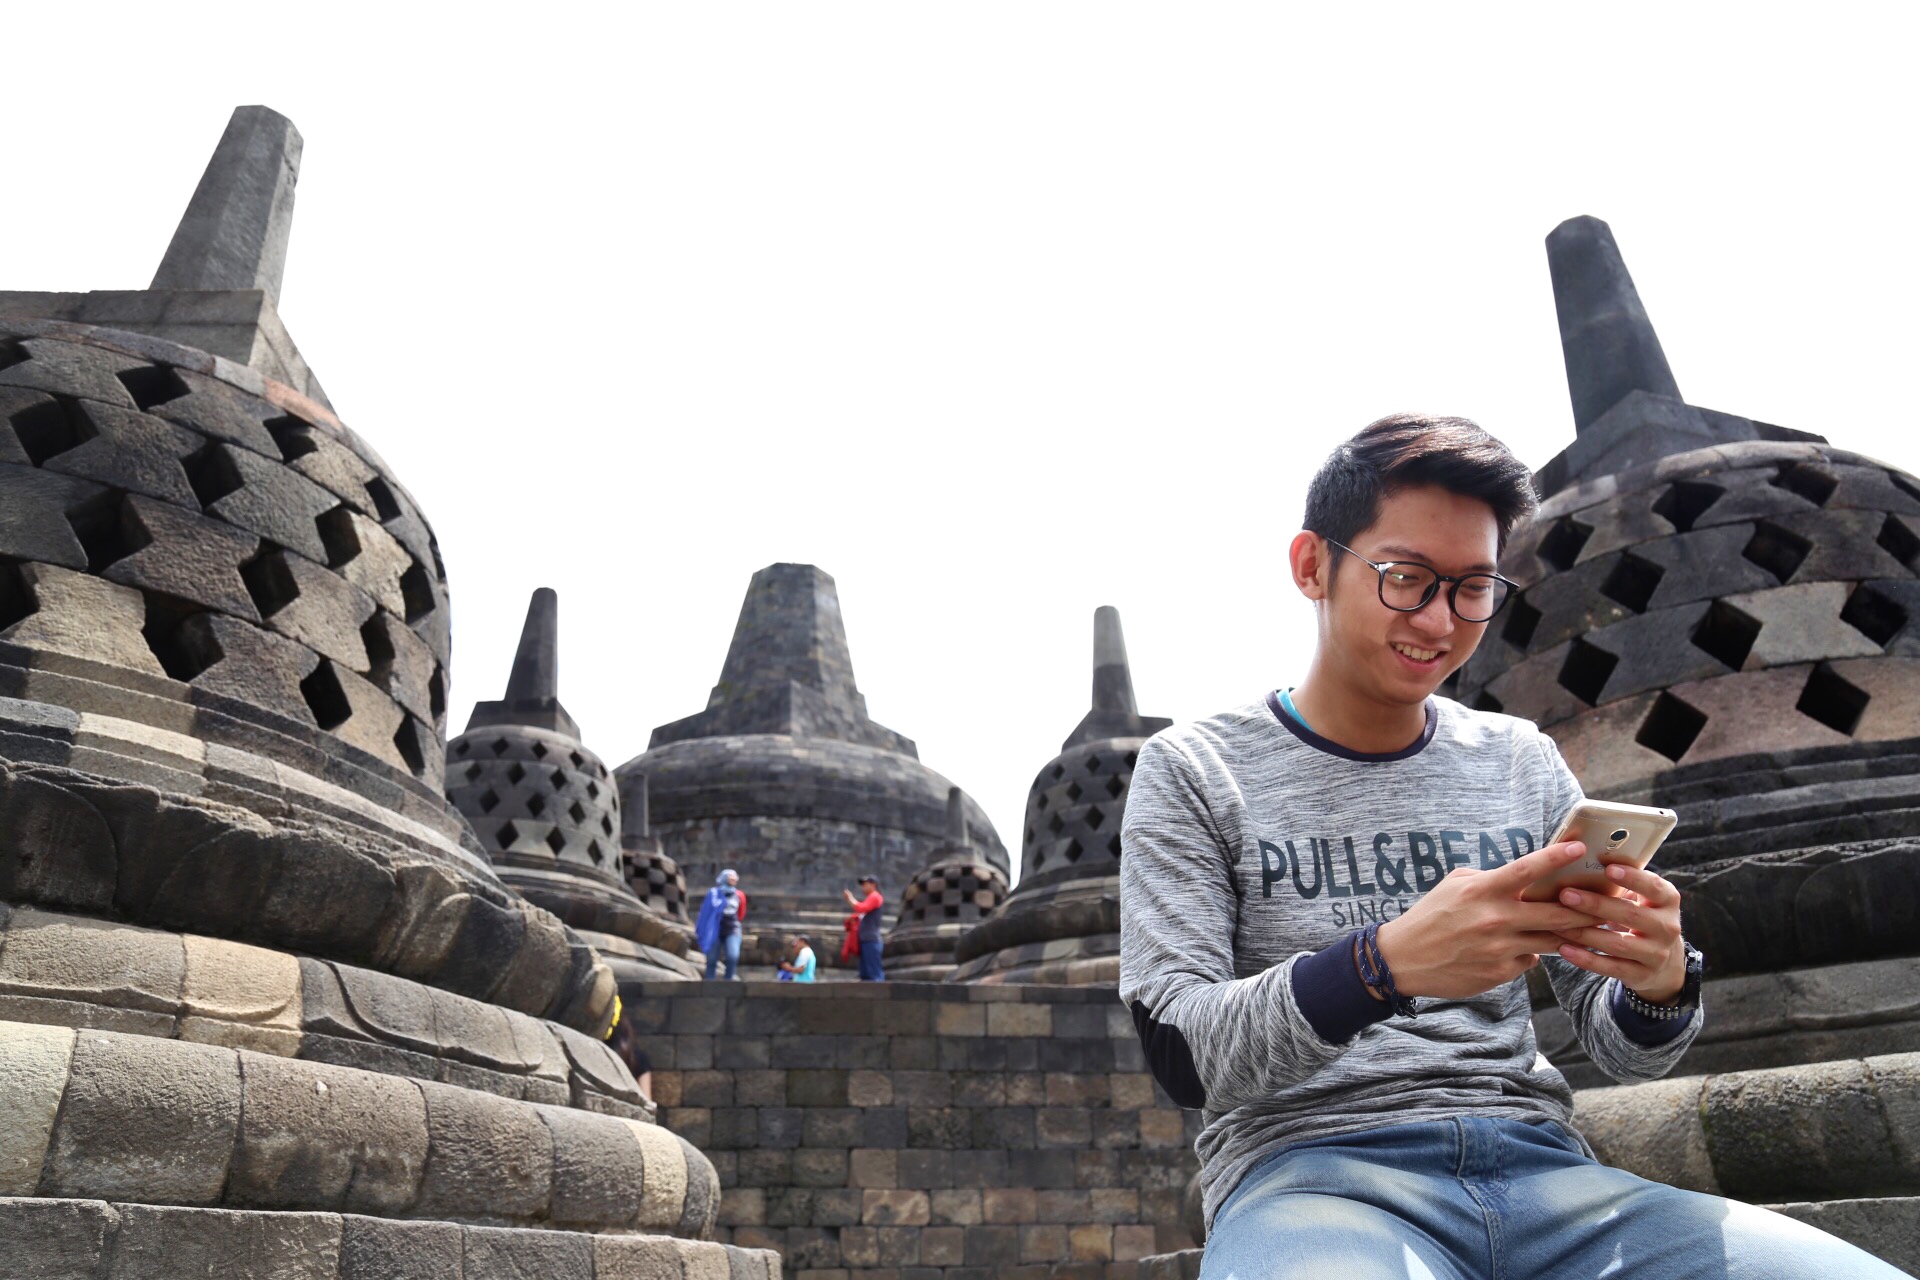 Seorang pengunjung sedang menggunakan layanan data Telkomsel saat berwisata di Candi Borobudur, Jawa Tengah. Telkomsel melakukan peningkatan kualitas jaringan di 12 destinasi wisata utama di tanah air untuk mengantisipasi tingginya kebutuhan wisatawan yang aktif menggunakan layanan komunikasi selama berada di lokasi wisata